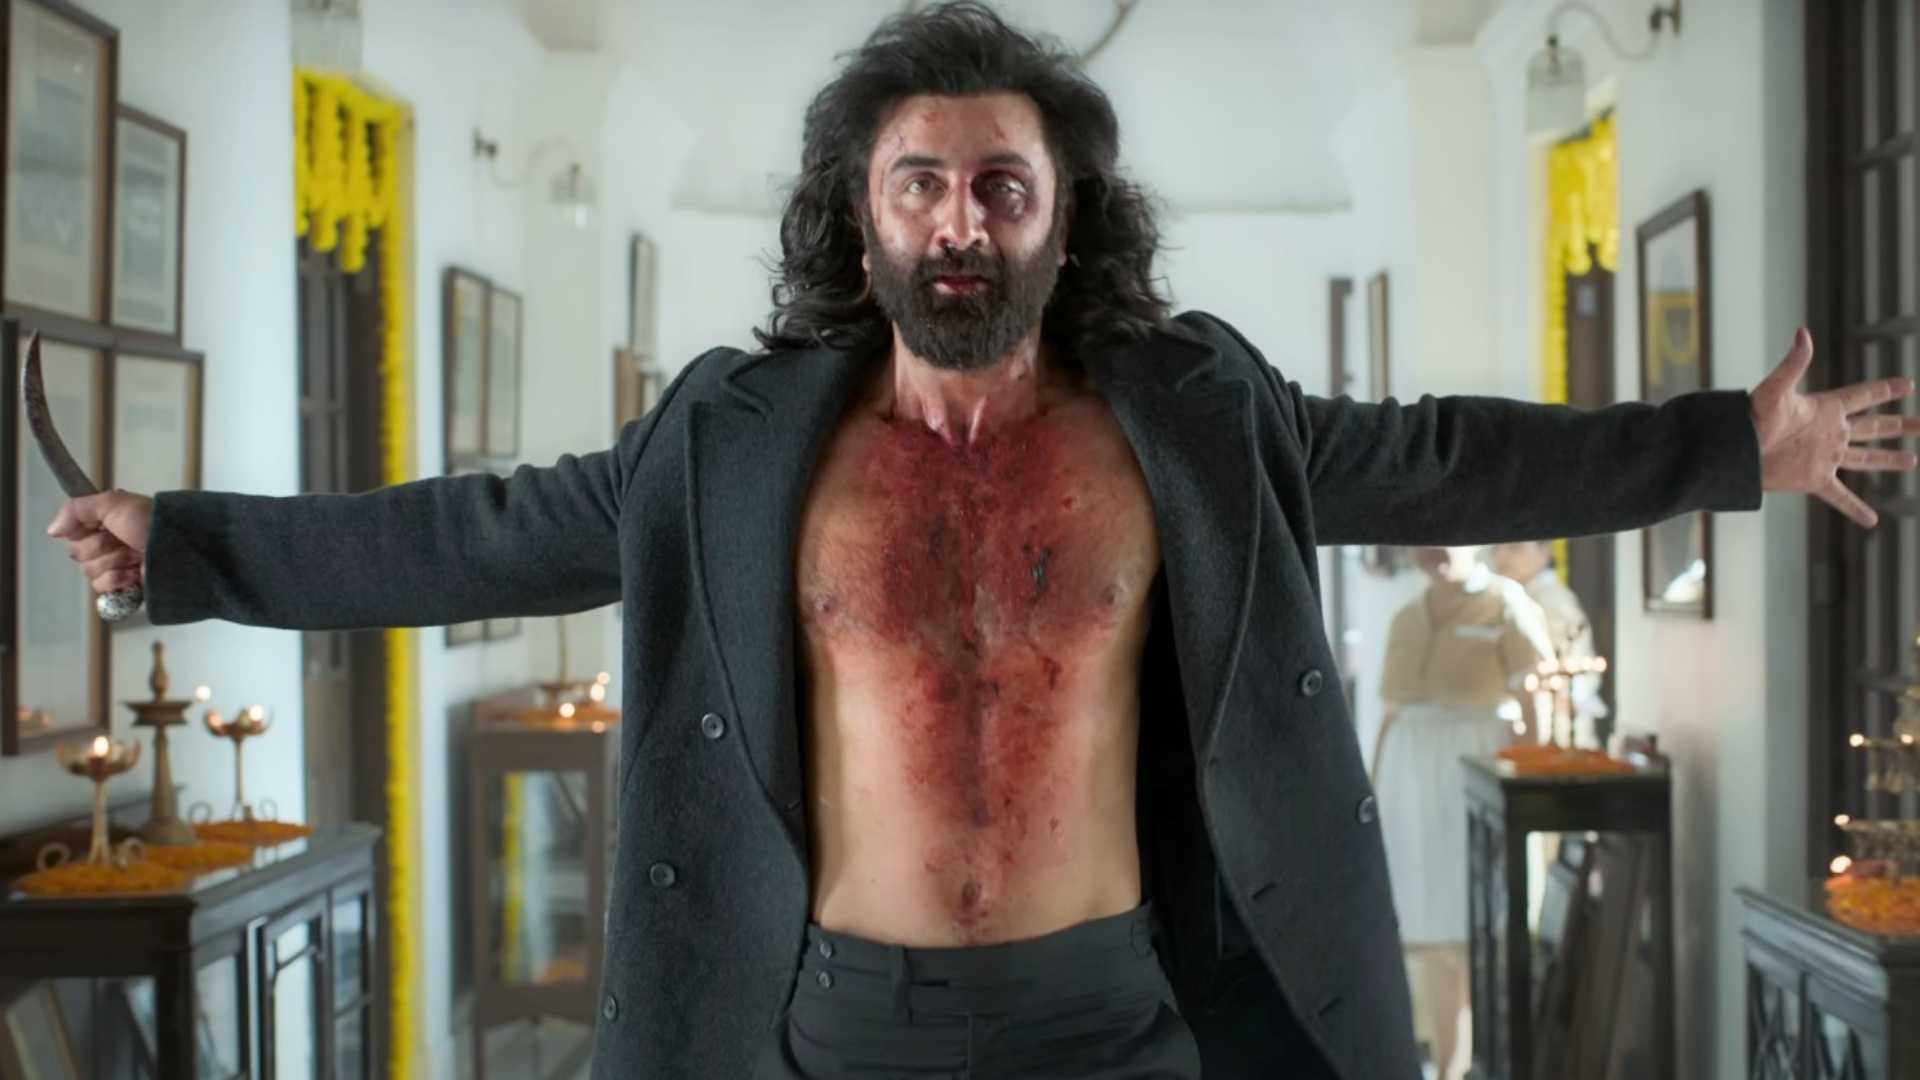 Animal movie review: Ranbir Kapoor is bloody brilliant as a brutal beast in Sandeep Reddy Vanga’s gory bloodbath of a film